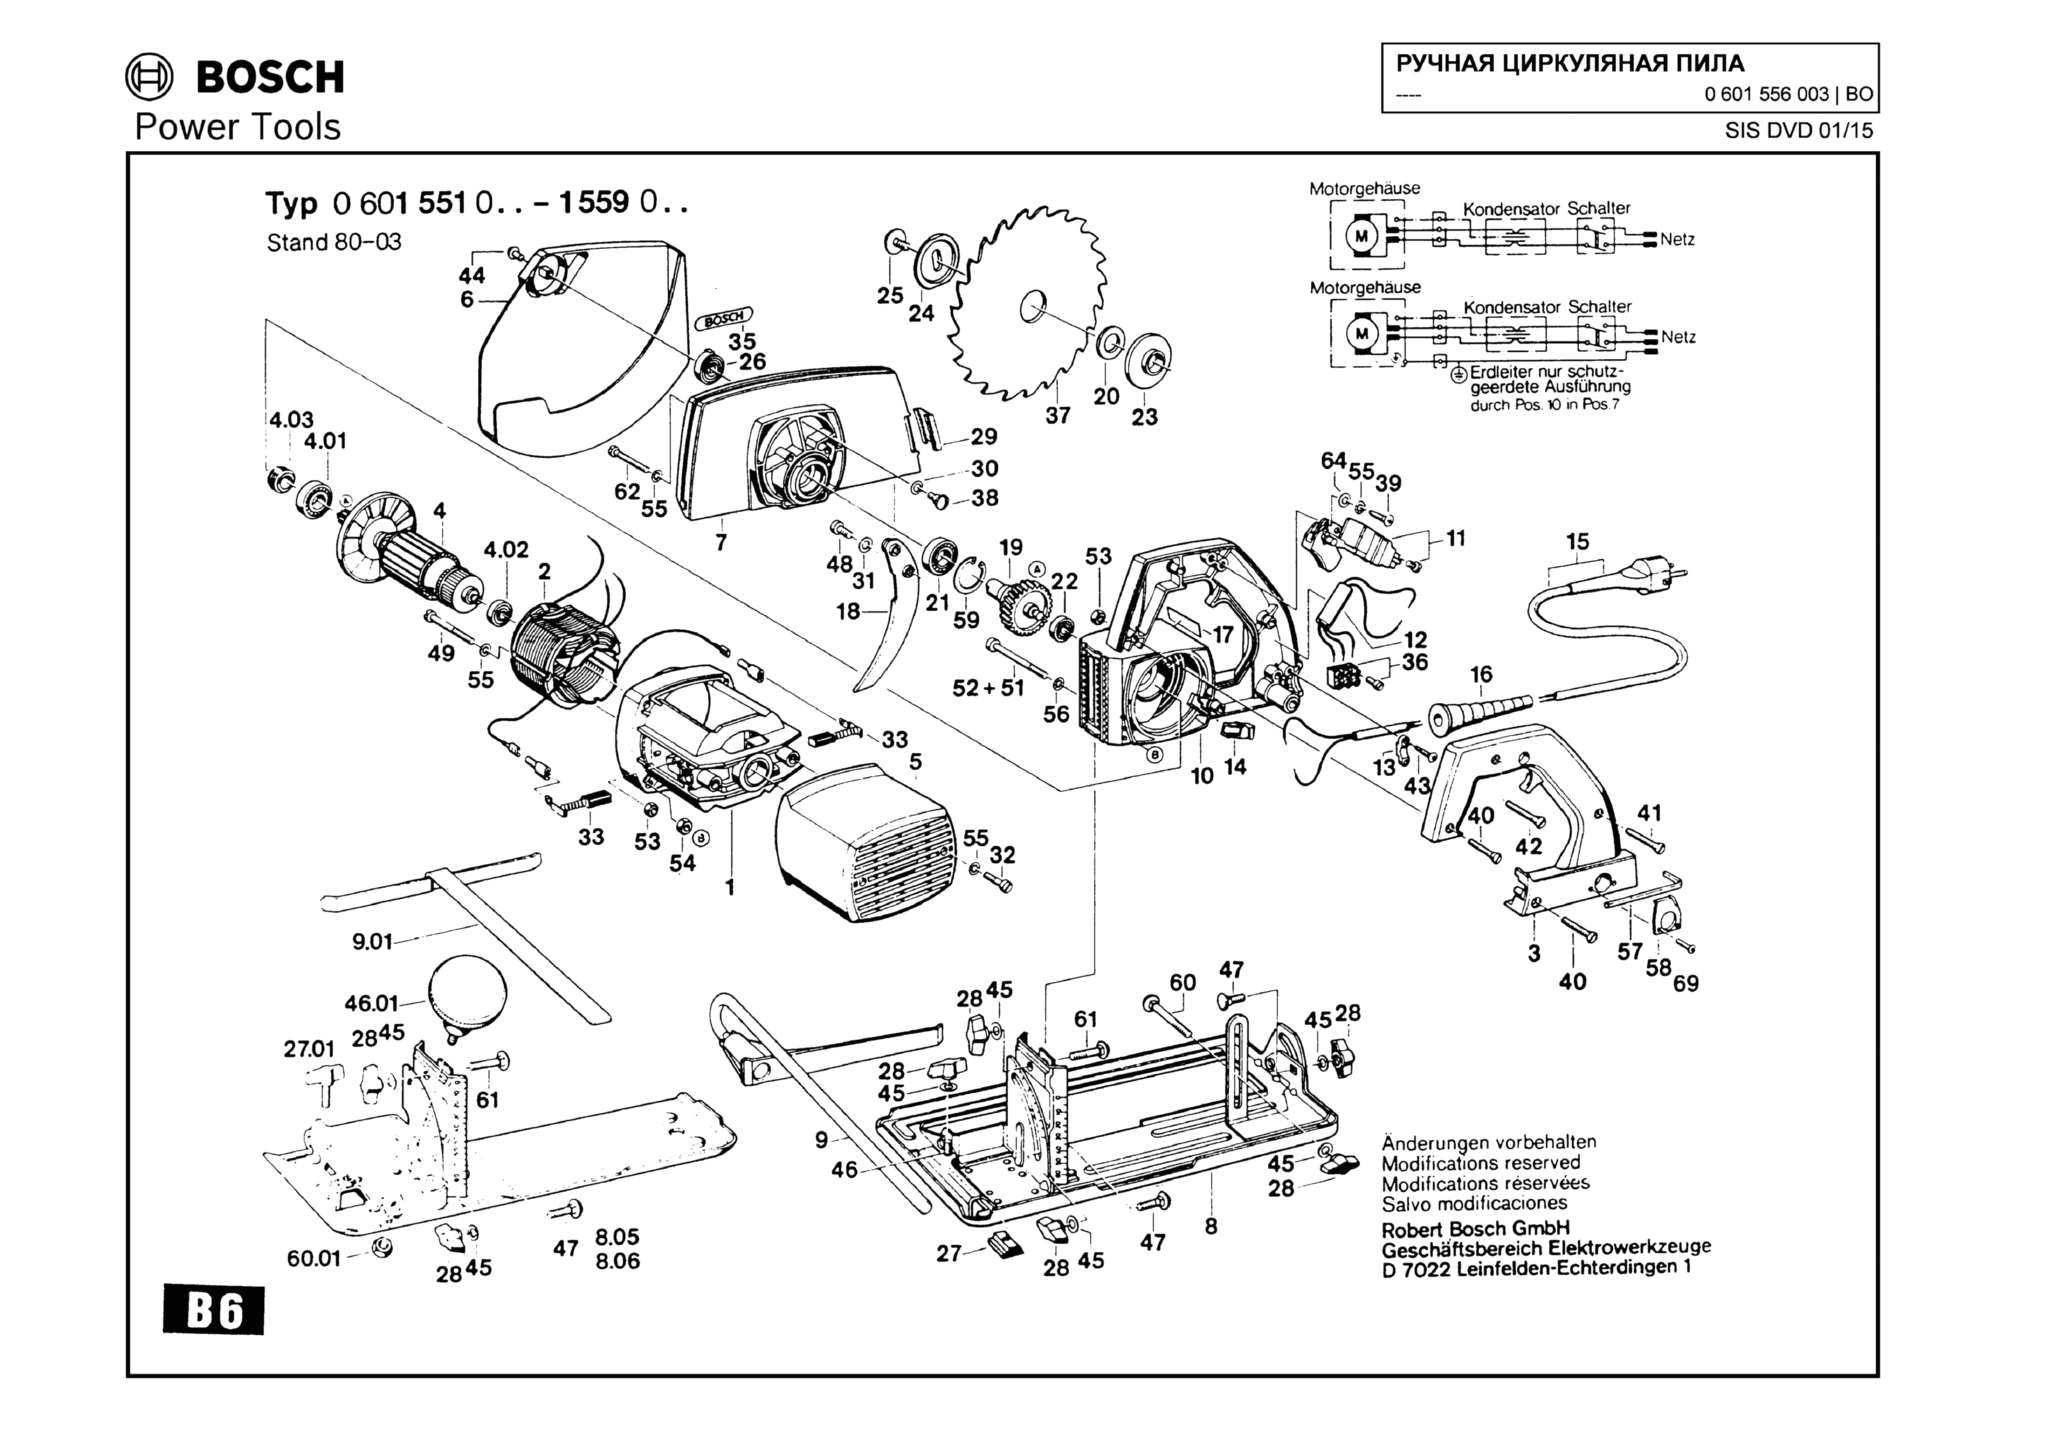 Запчасти, схема и деталировка Bosch (ТИП 0601556003)